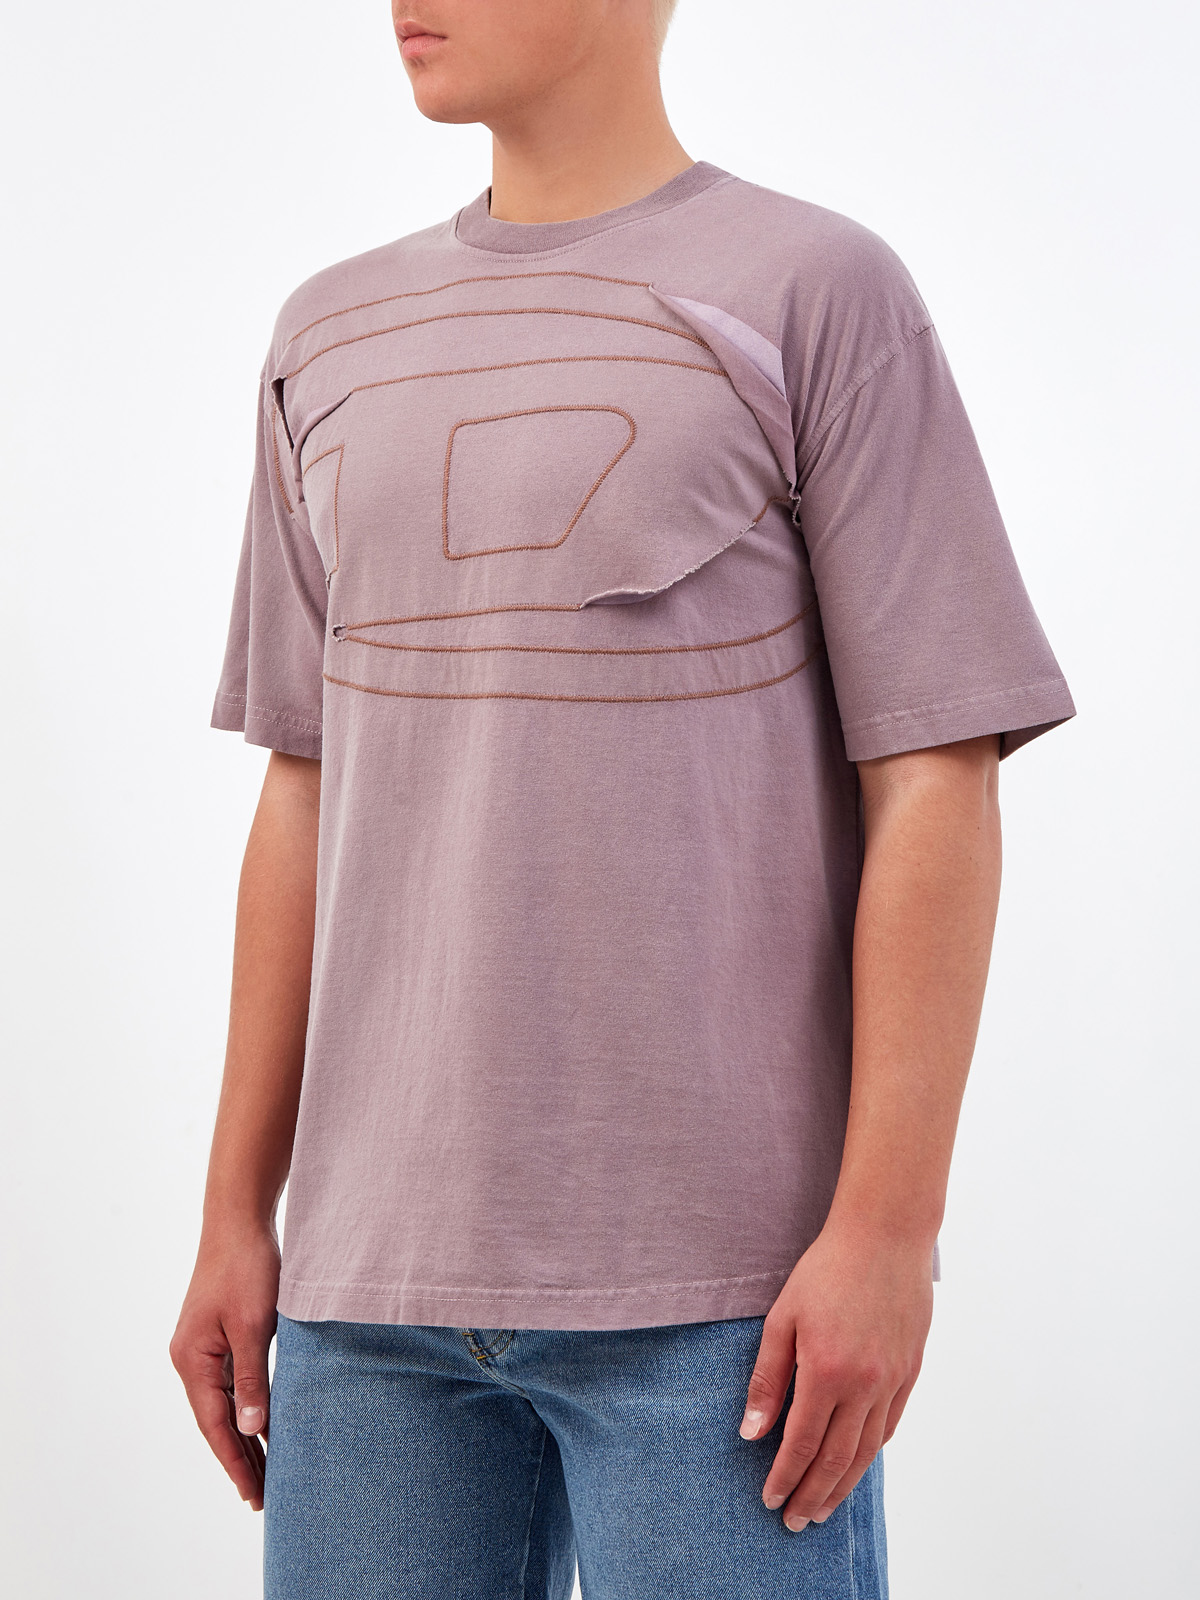 Хлопковая футболка с логотипом в многослойной технике DIESEL, цвет фиолетовый, размер S;L;XL;M - фото 3